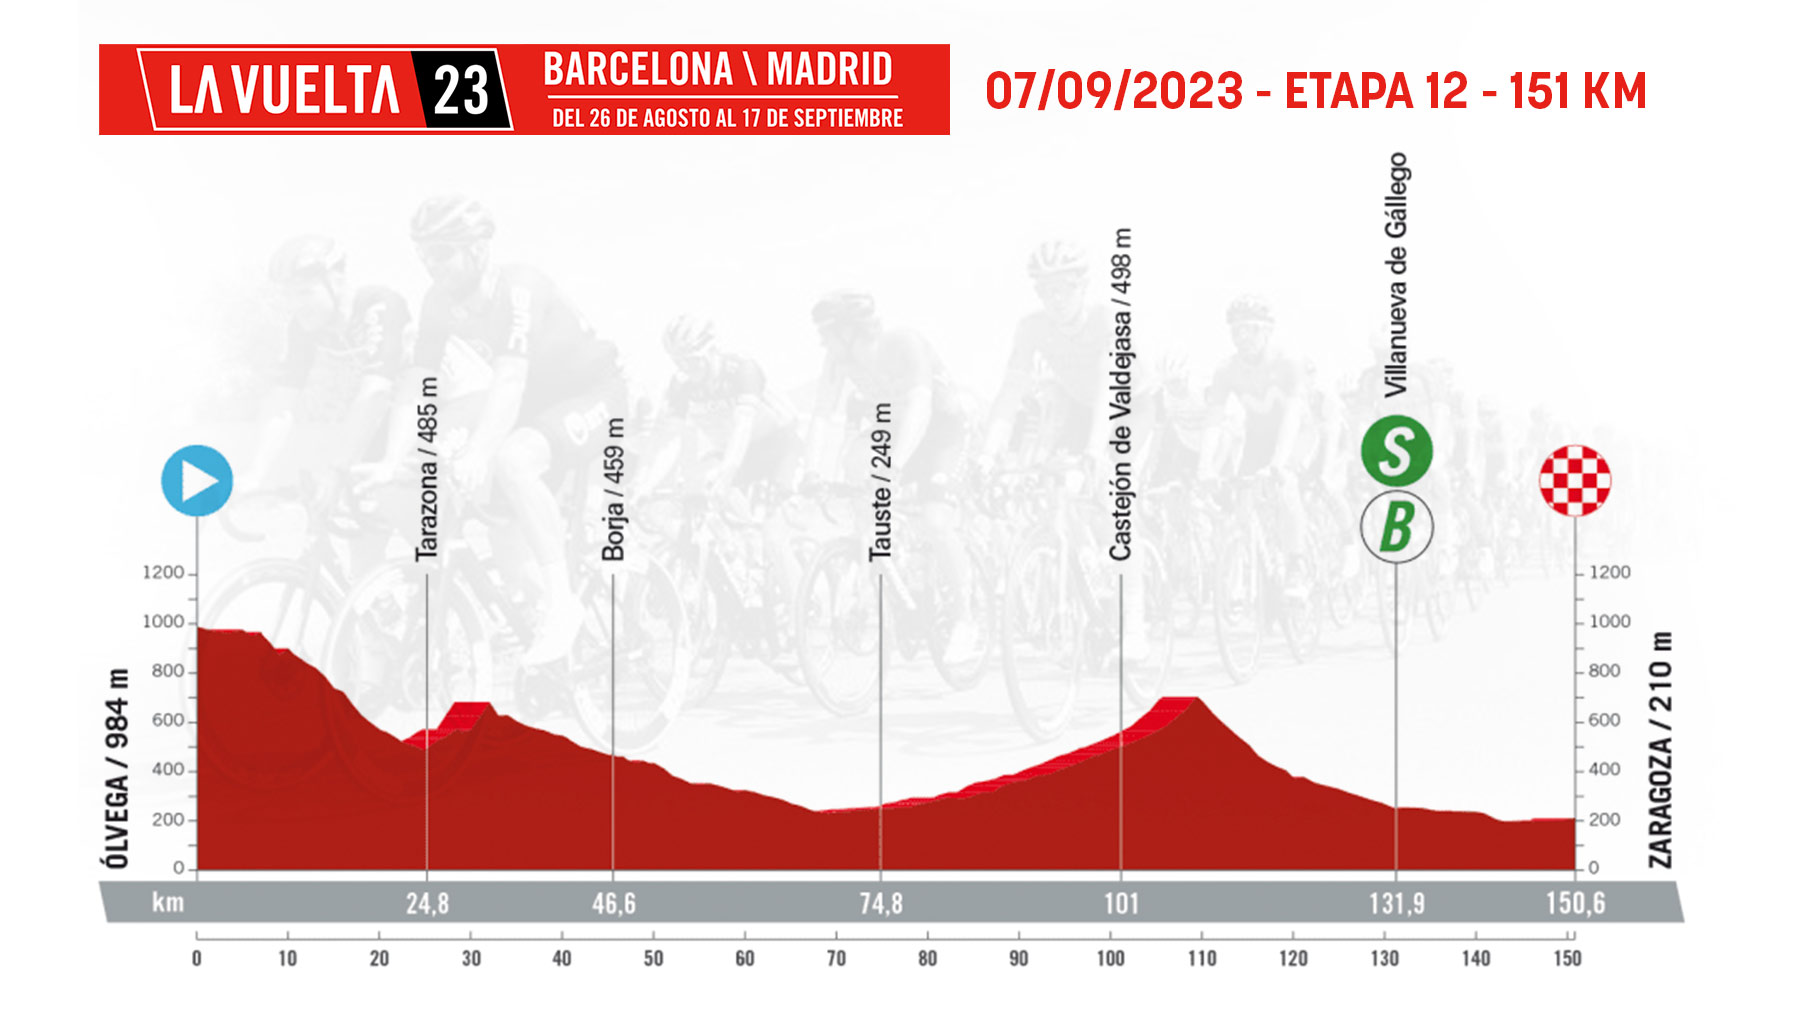 Etapa 12 de la Vuelta Ciclista a España 2023 hoy, jueves 7 de septiembre de Ólvega a Zaragoza.